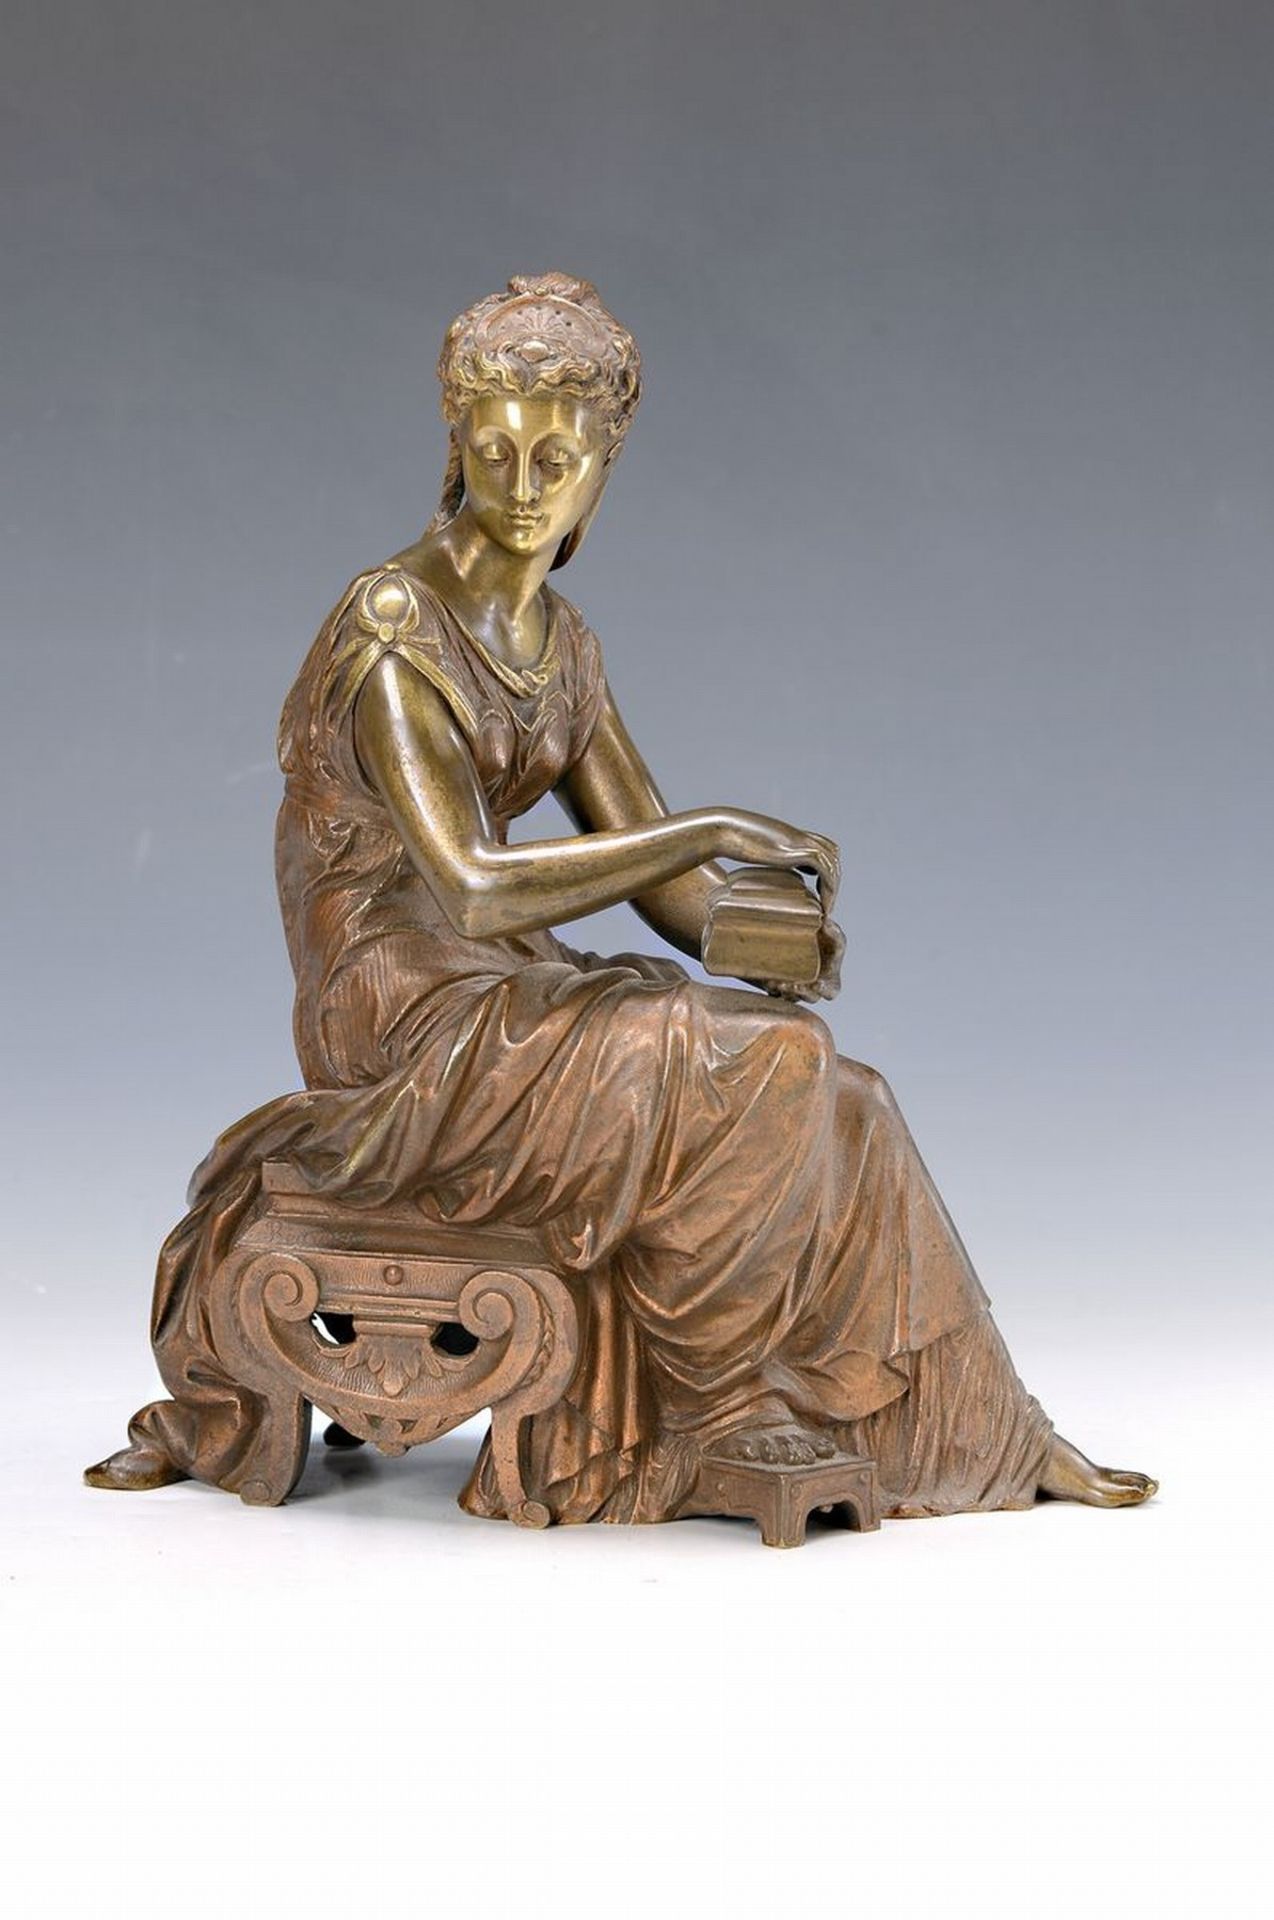 Bourely, wohl franz. Künstler, um 1900, Bronzeskulptur,